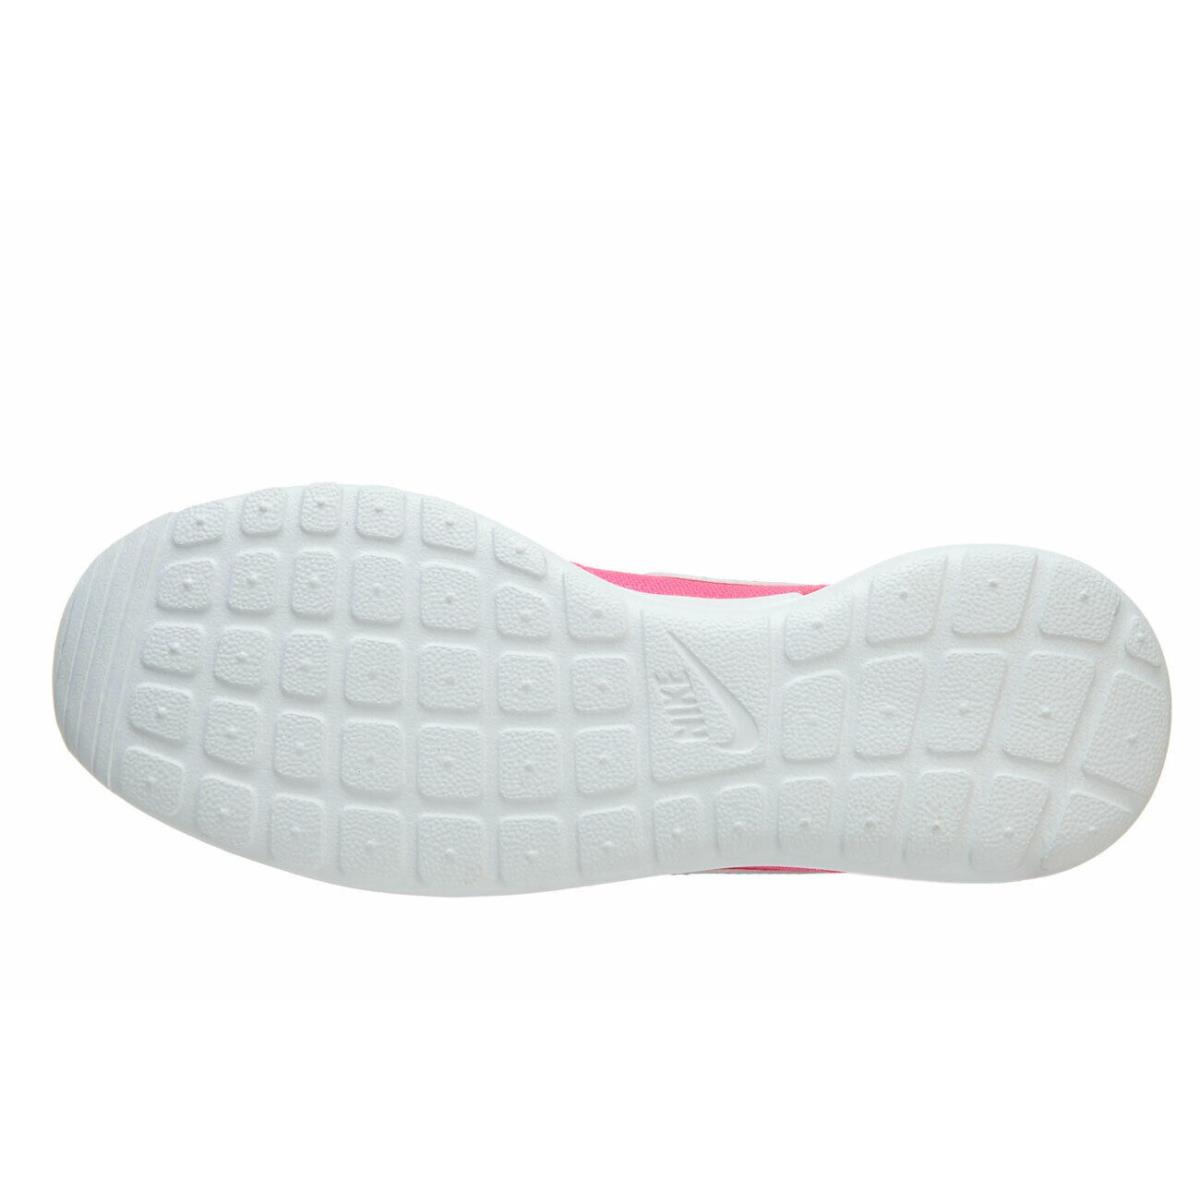 Nike Roshe One GS Hyper Pink Hyper Jade 599729 605 Big Kid`s Sneakers - Pink